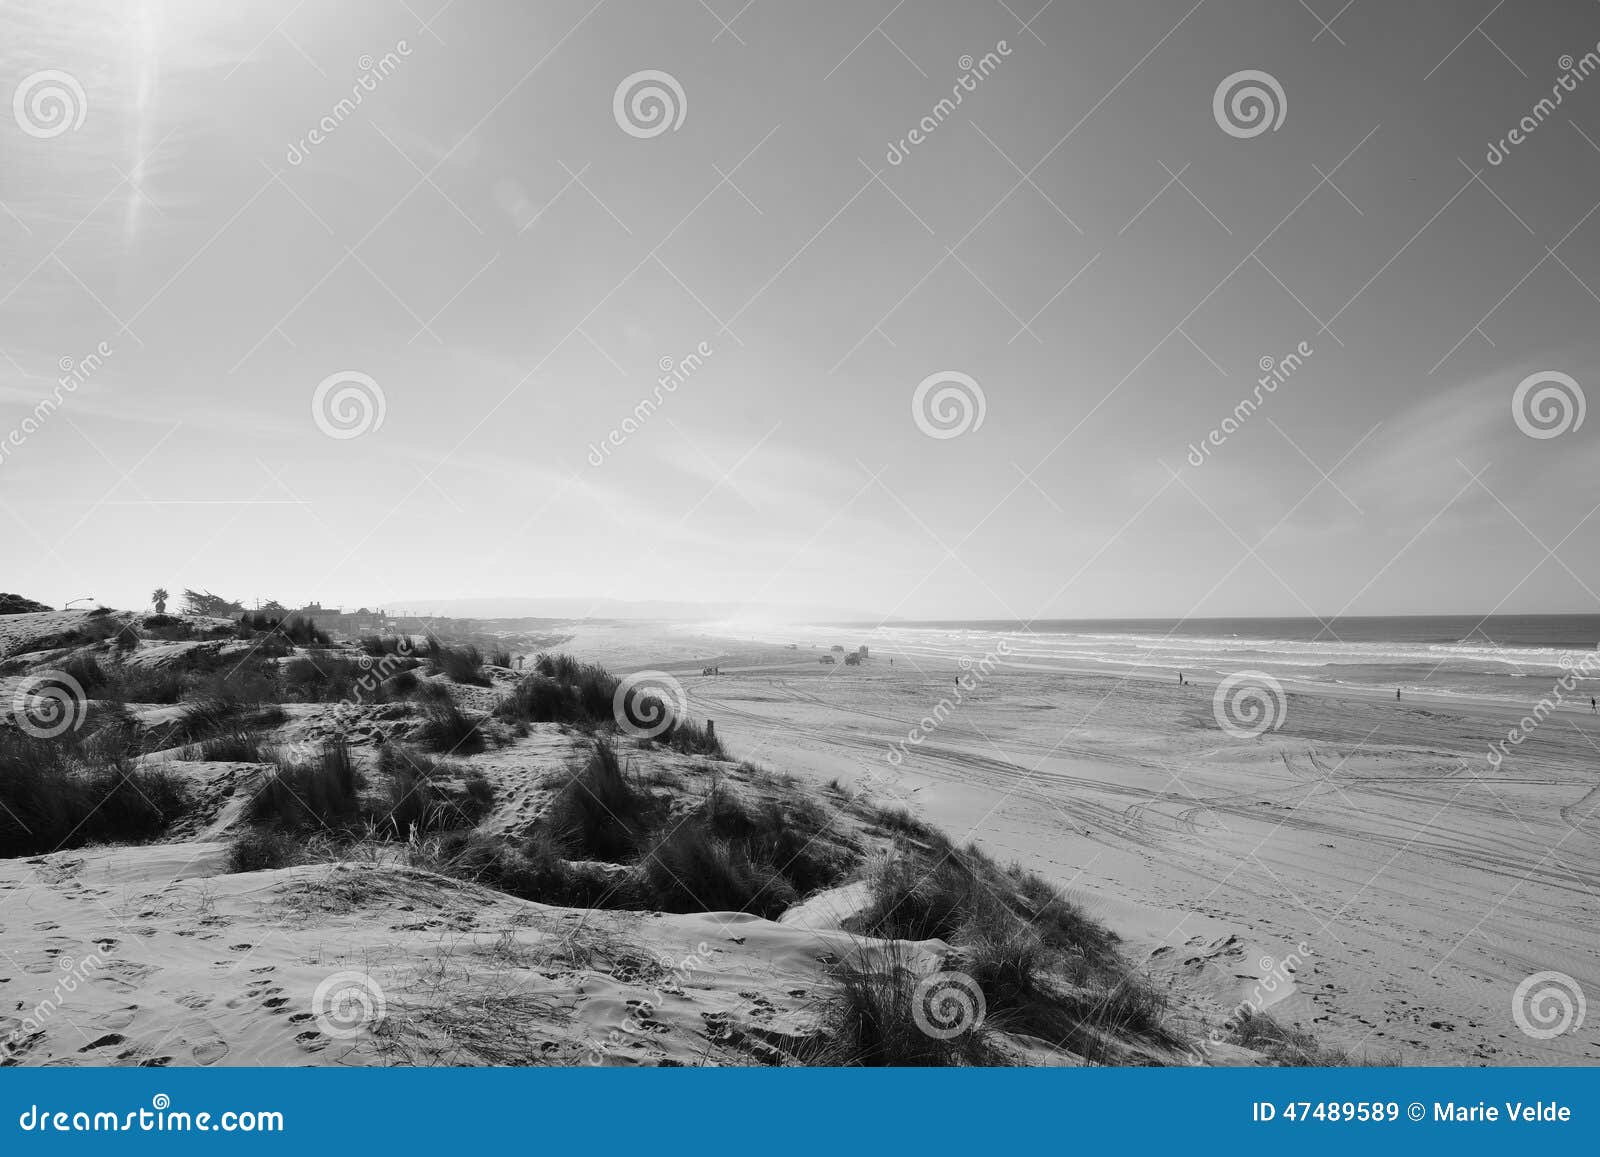 oceano dunes landscape